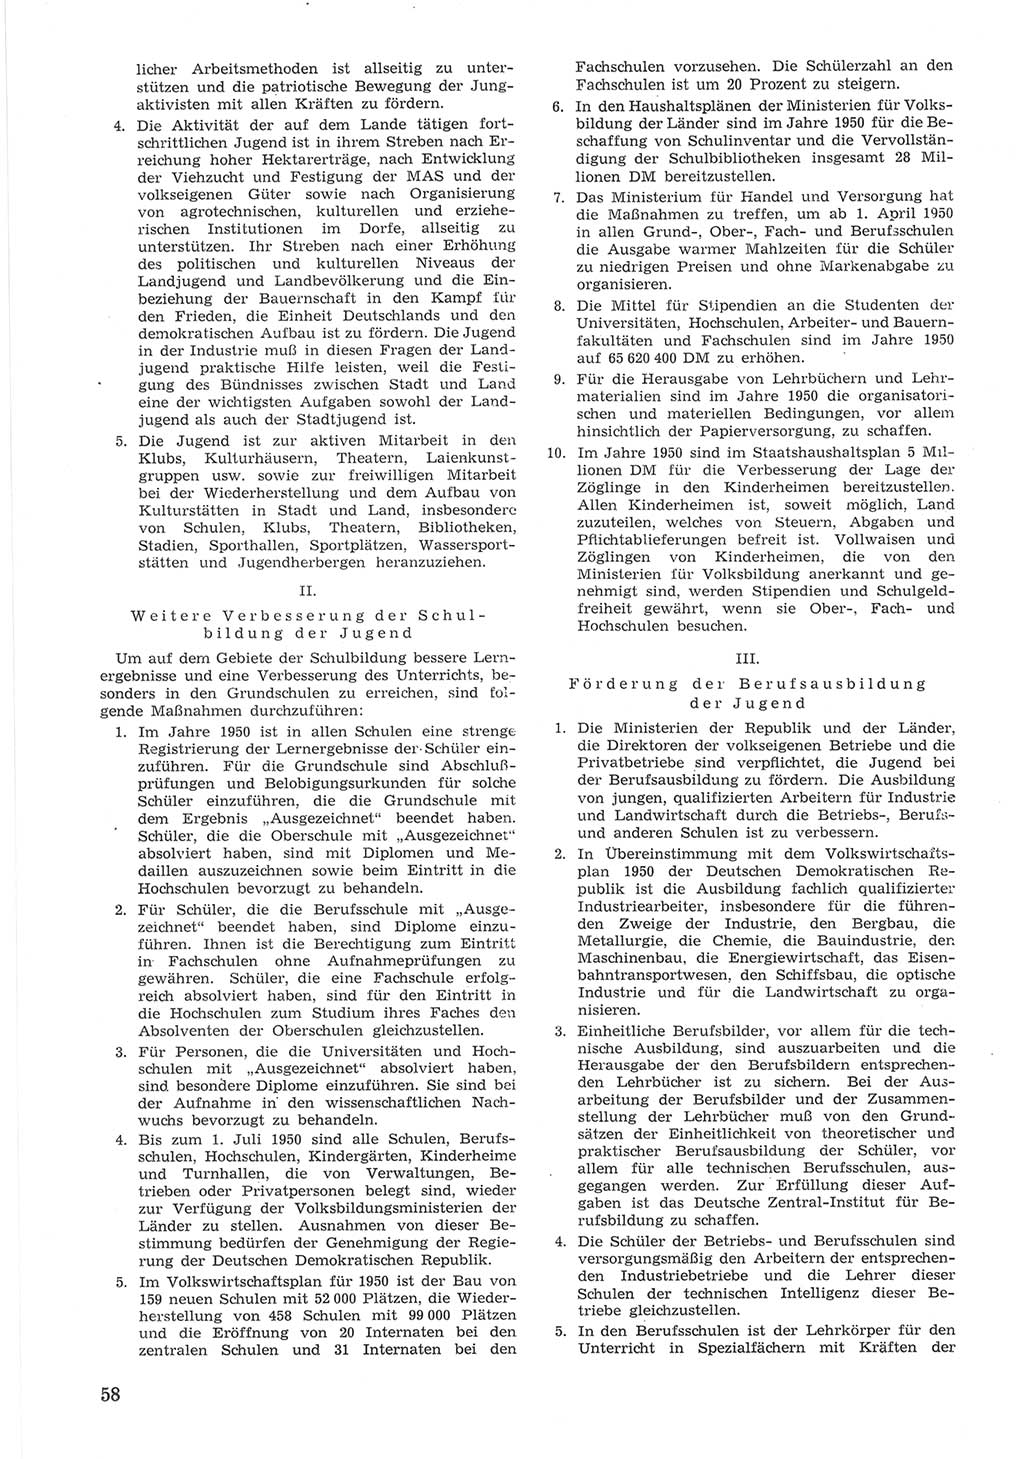 Provisorische Volkskammer (VK) der Deutschen Demokratischen Republik (DDR) 1949-1950, Dokument 658 (Prov. VK DDR 1949-1950, Dok. 658)